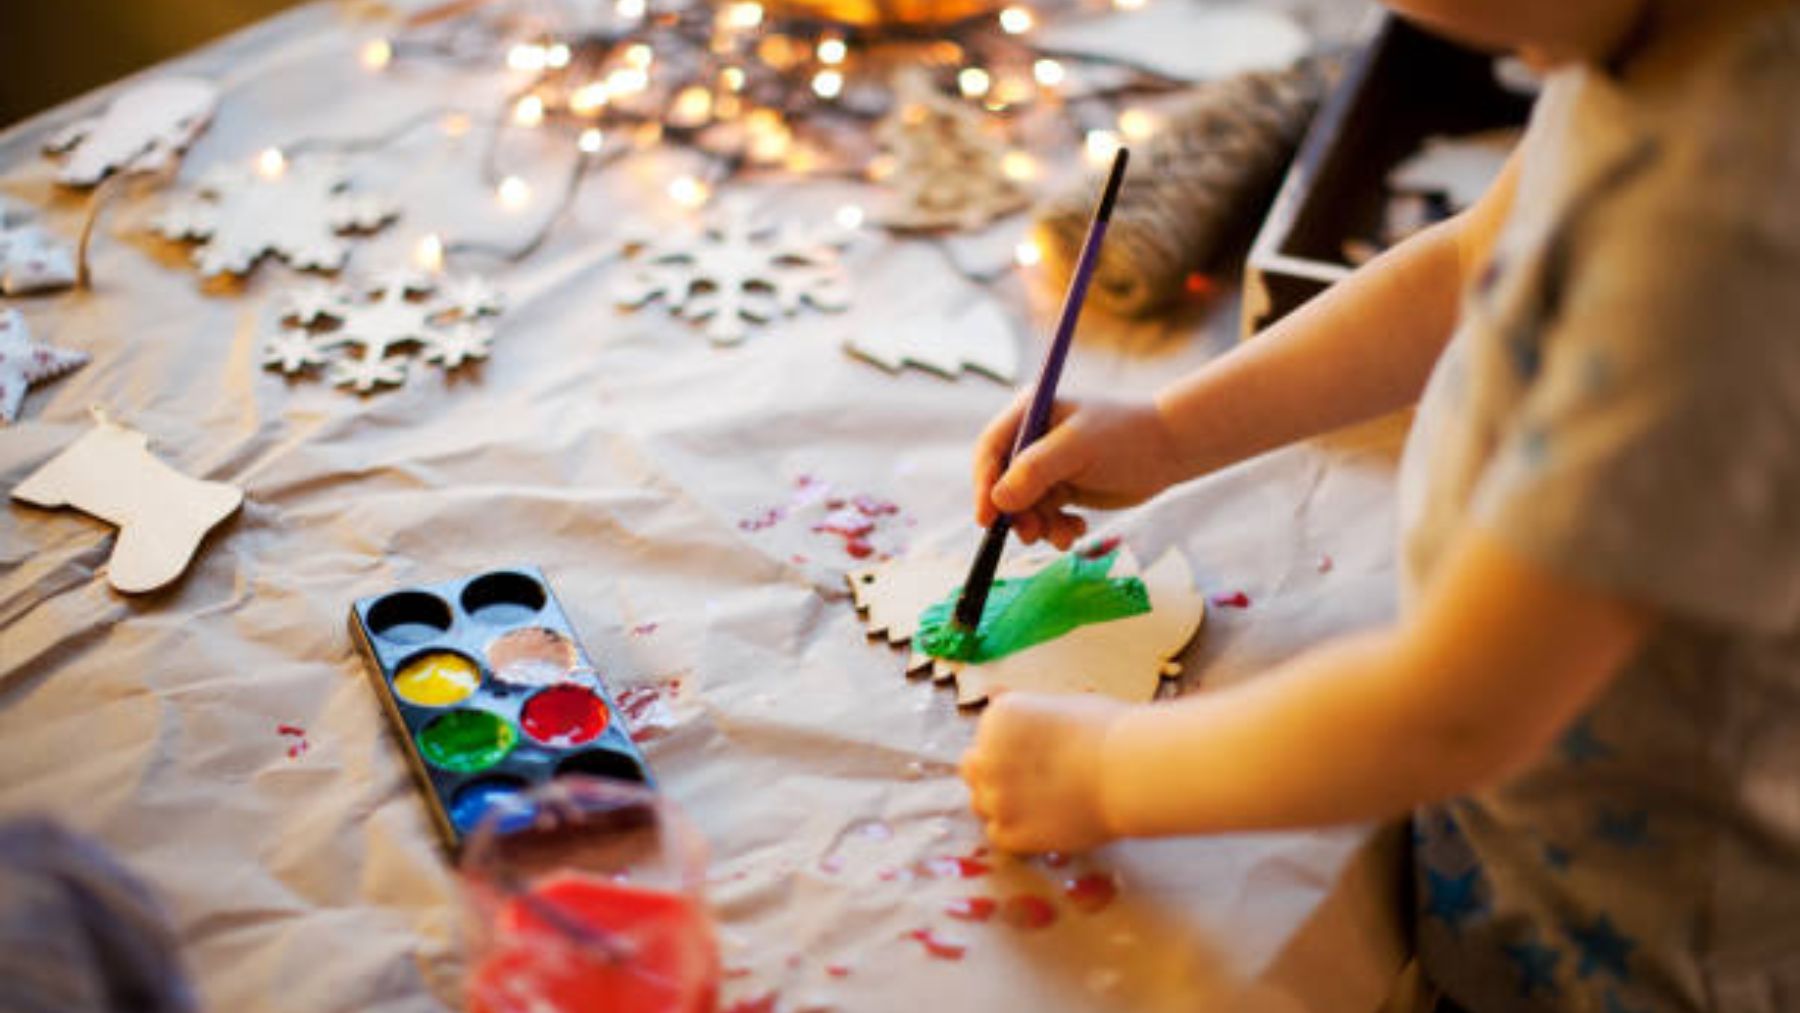 Descubre cómo podemos hacer adornos navideños originales con los niños